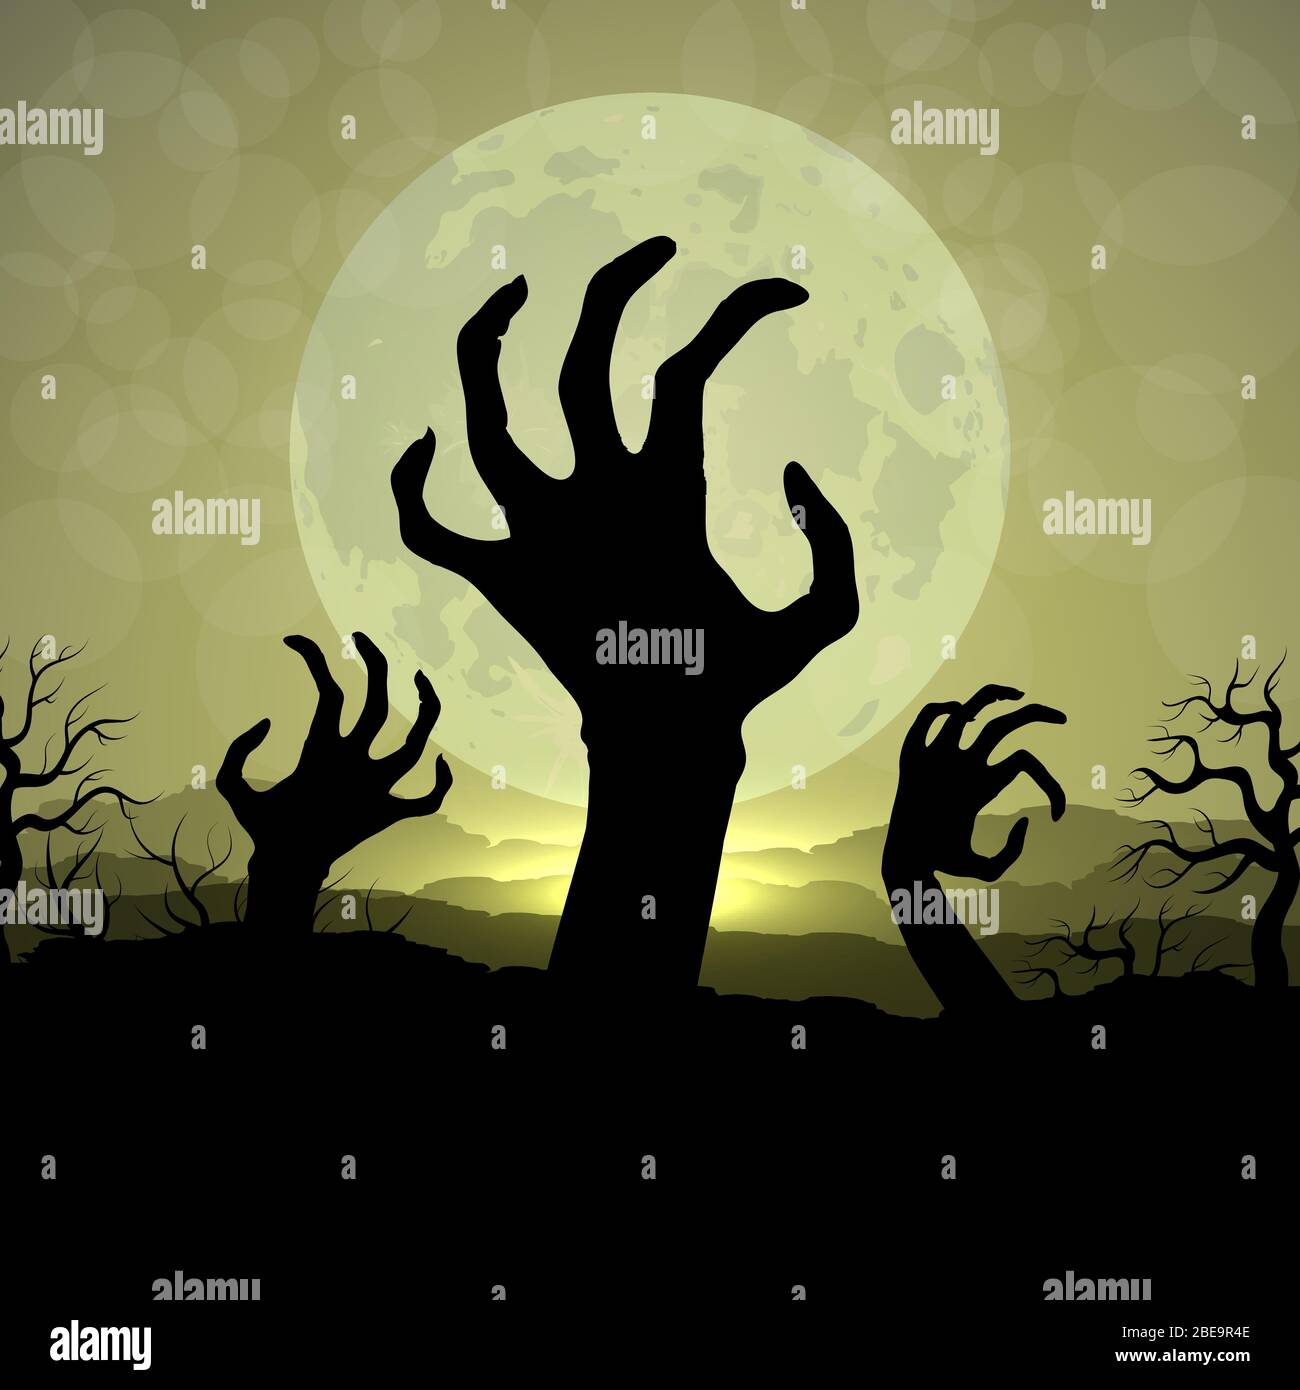 Zombi Hände in Halloween Nacht auf dem Mond Hintergrund. Vektor Zombie Hand Silhouette im Mondlicht halloween Nacht Illustration Stock Vektor